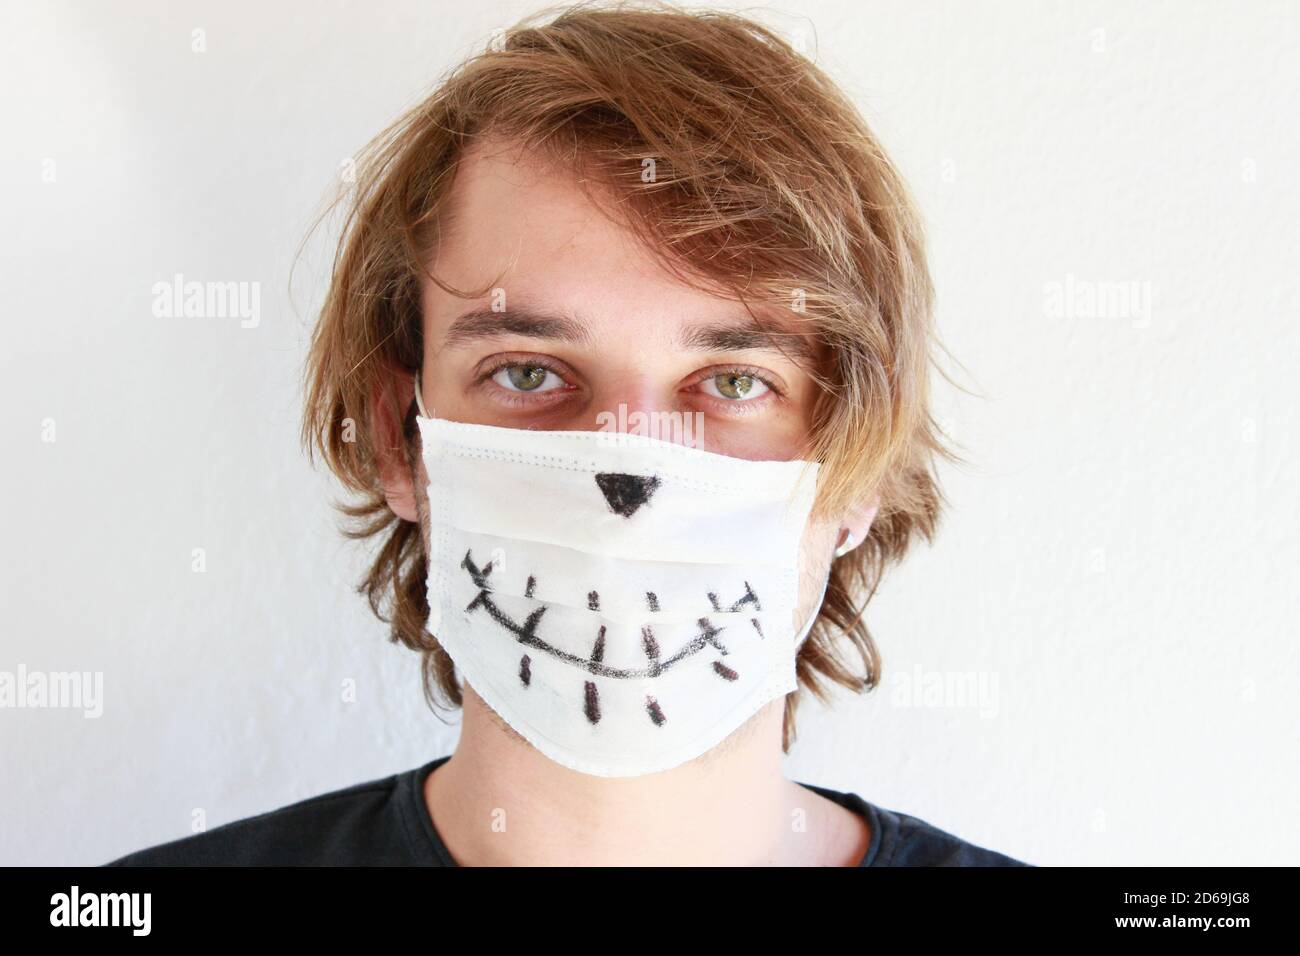 Junger Mann feiert Halloween mit medizinischer Gesichtsmaske wegen Covid-19 Pandemie Stockfoto